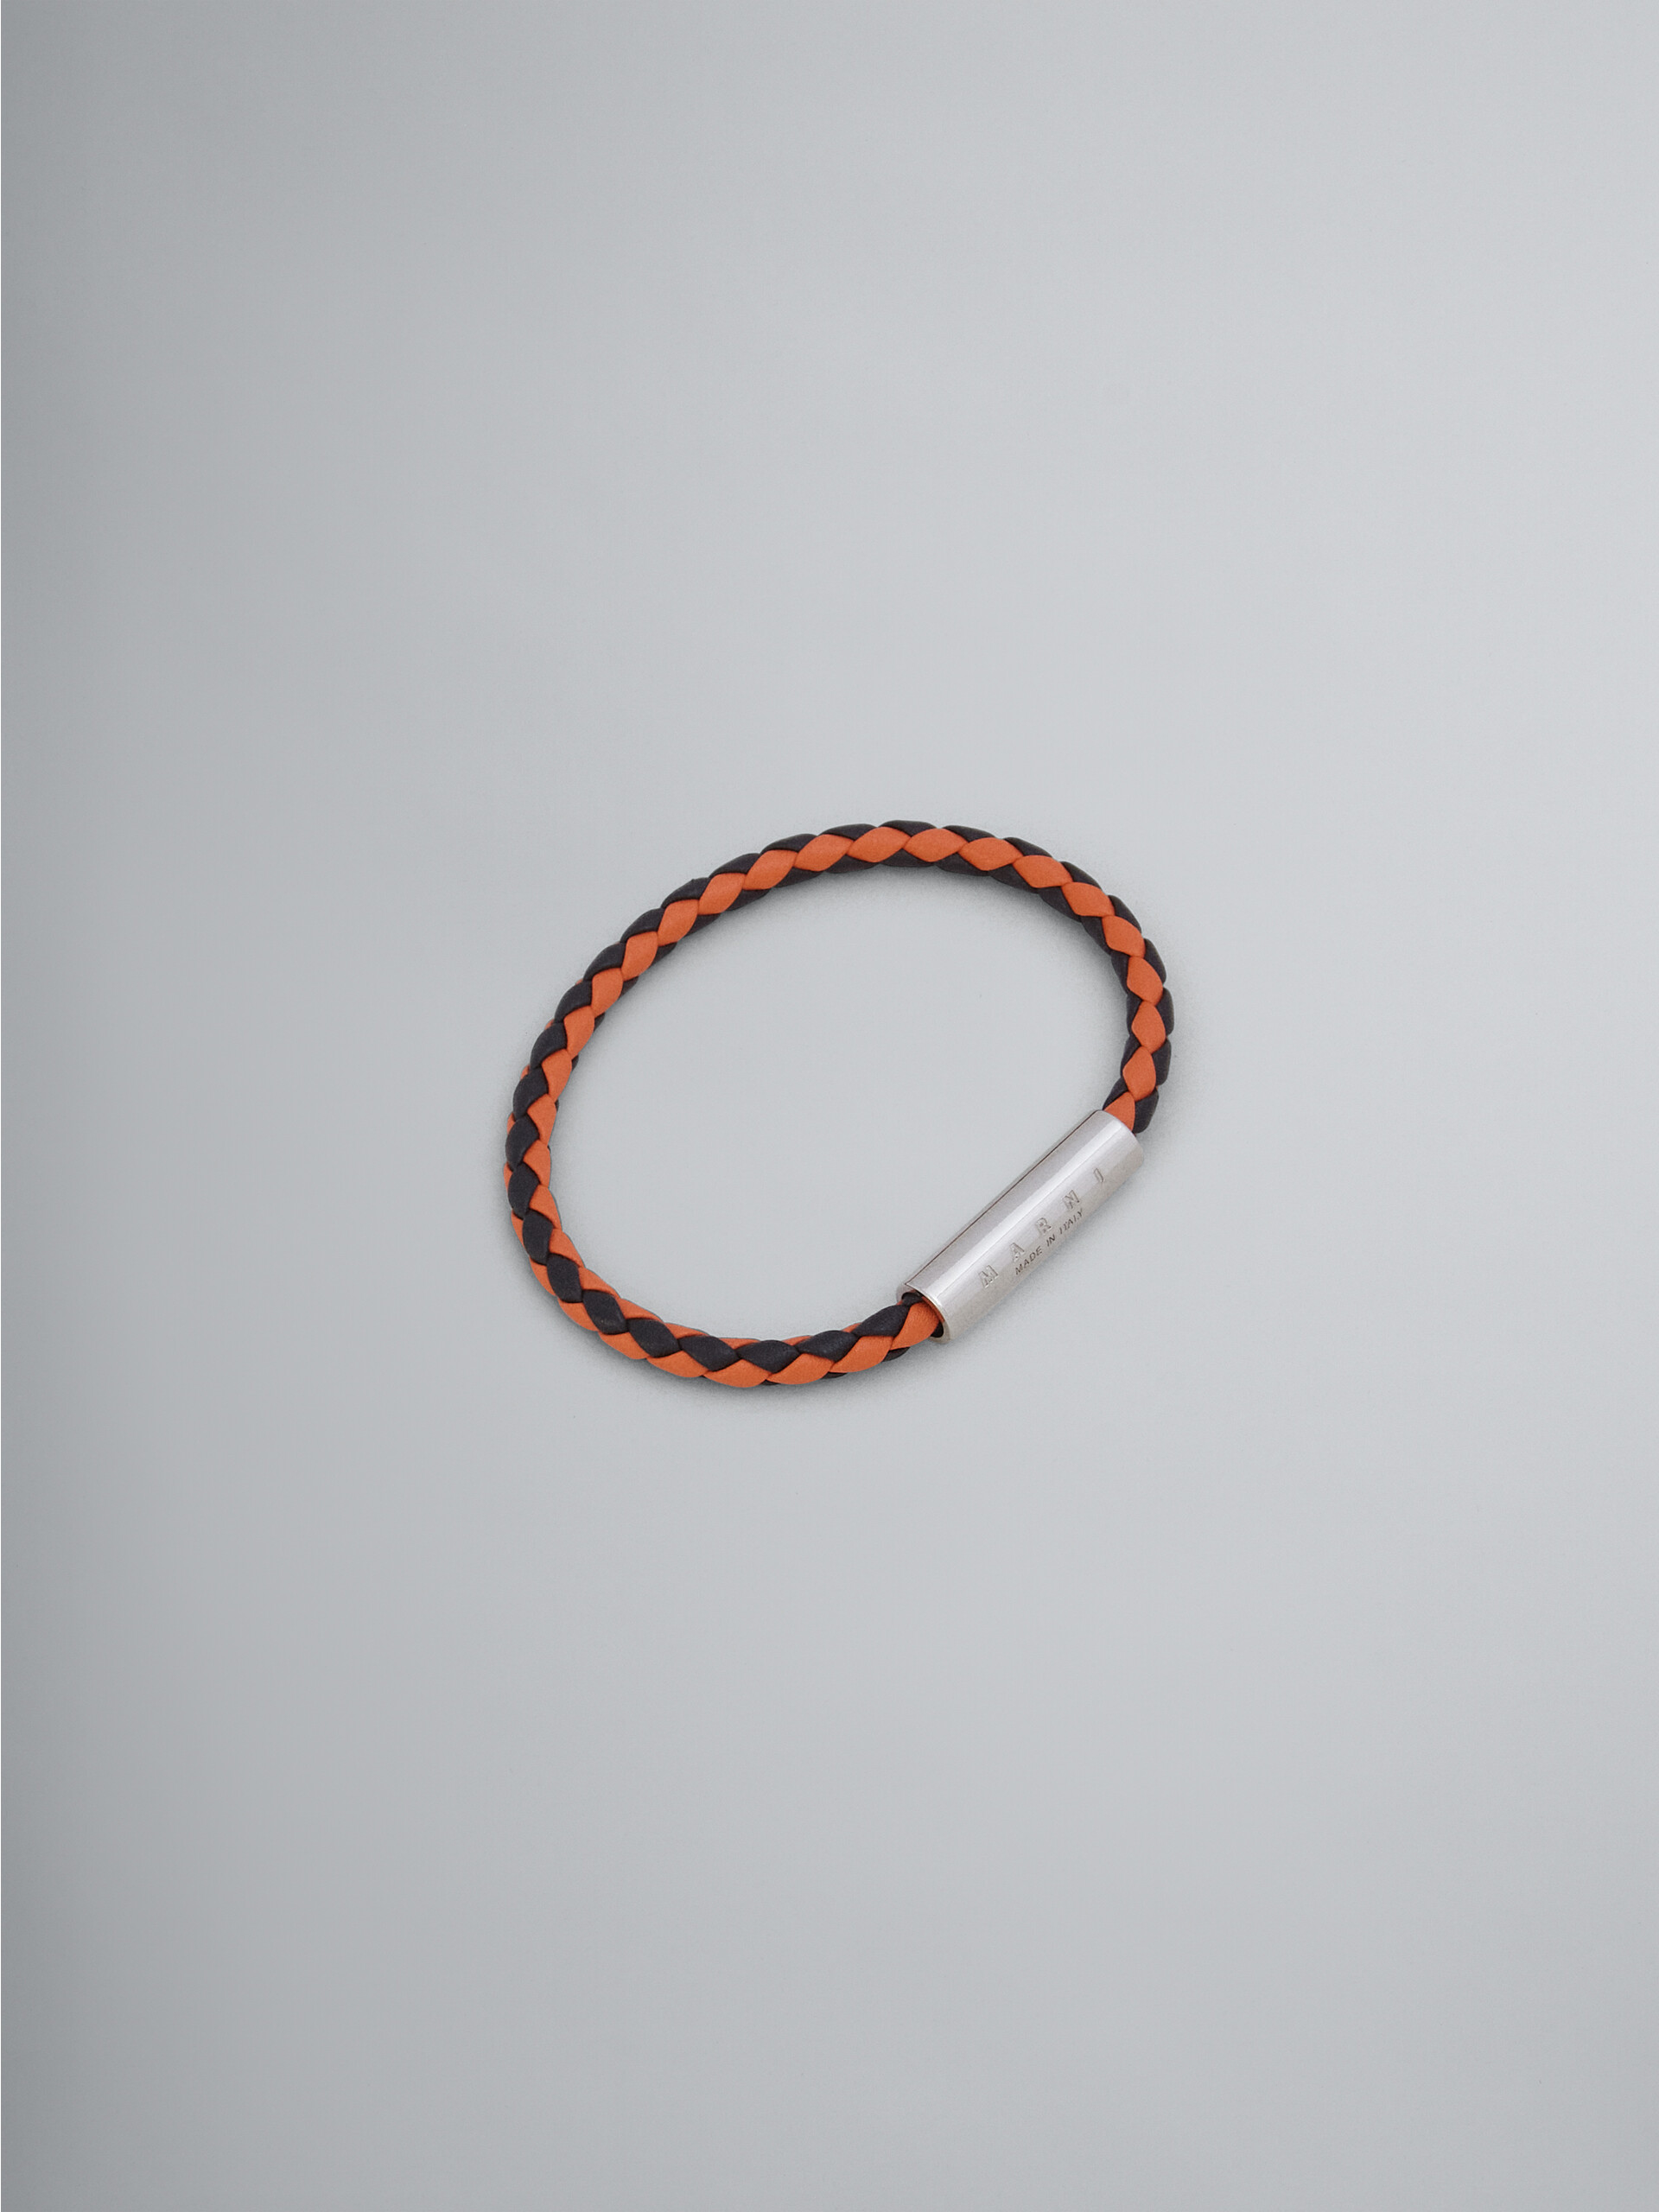 Orange and green braided leather bracelet - Bracelets - Image 1